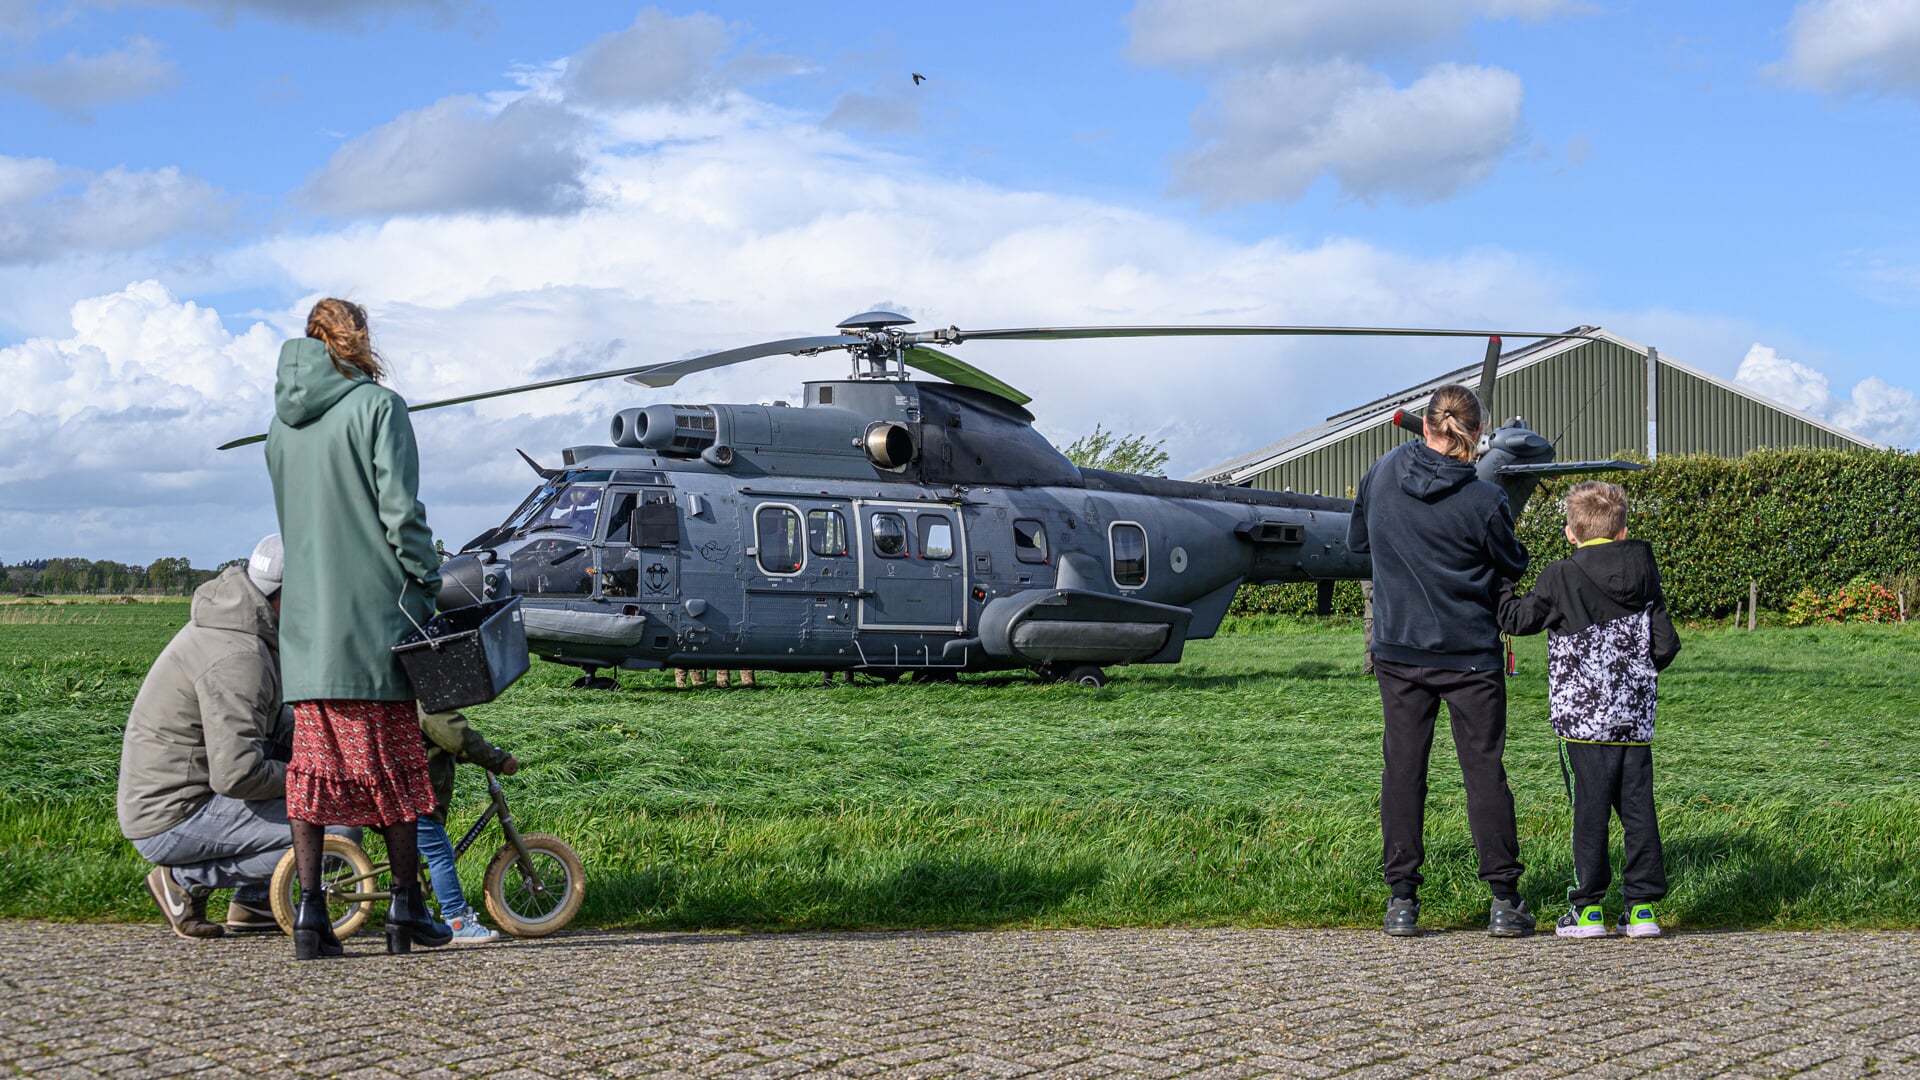 Nieuwsgierige passanten bij de militaire helikopter.